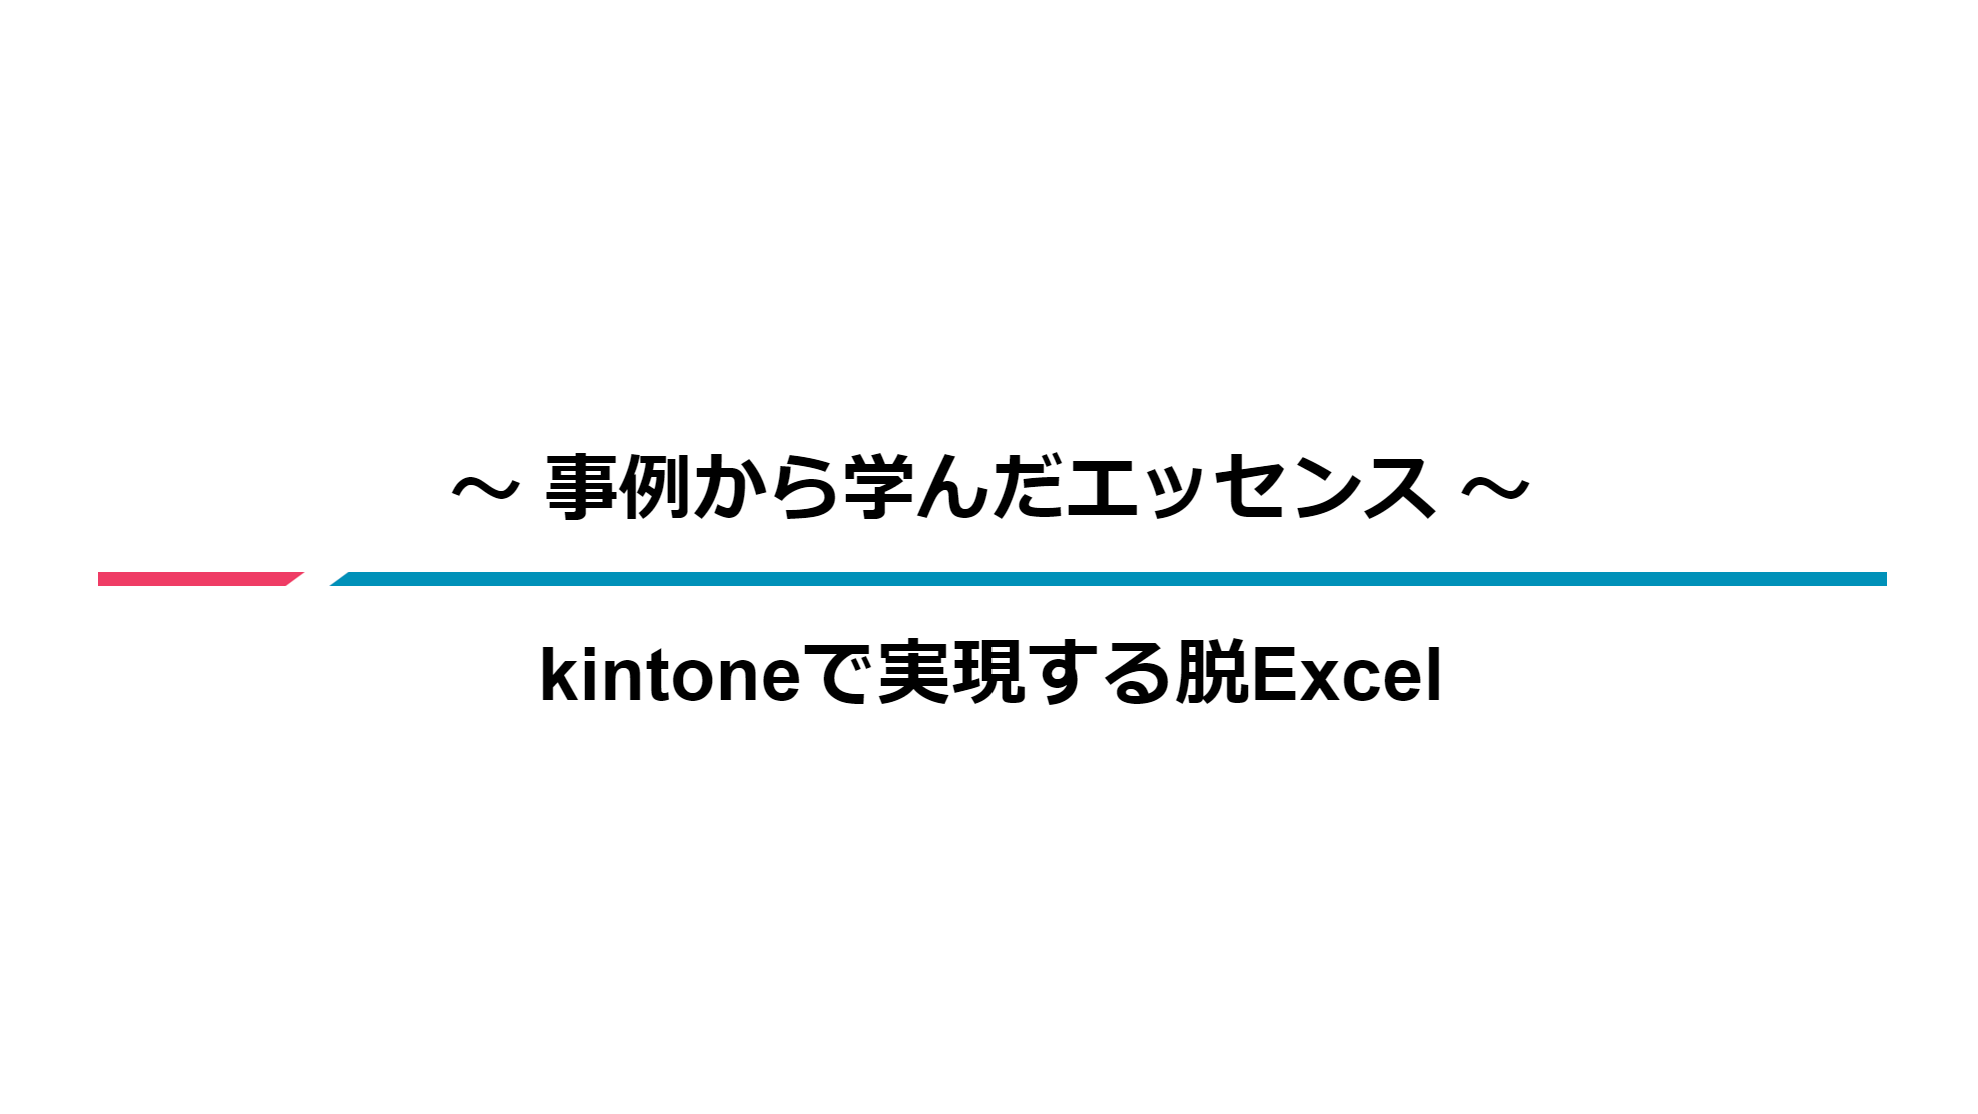 事例から学んだエッセンス-kintoneで実現する脱Excel